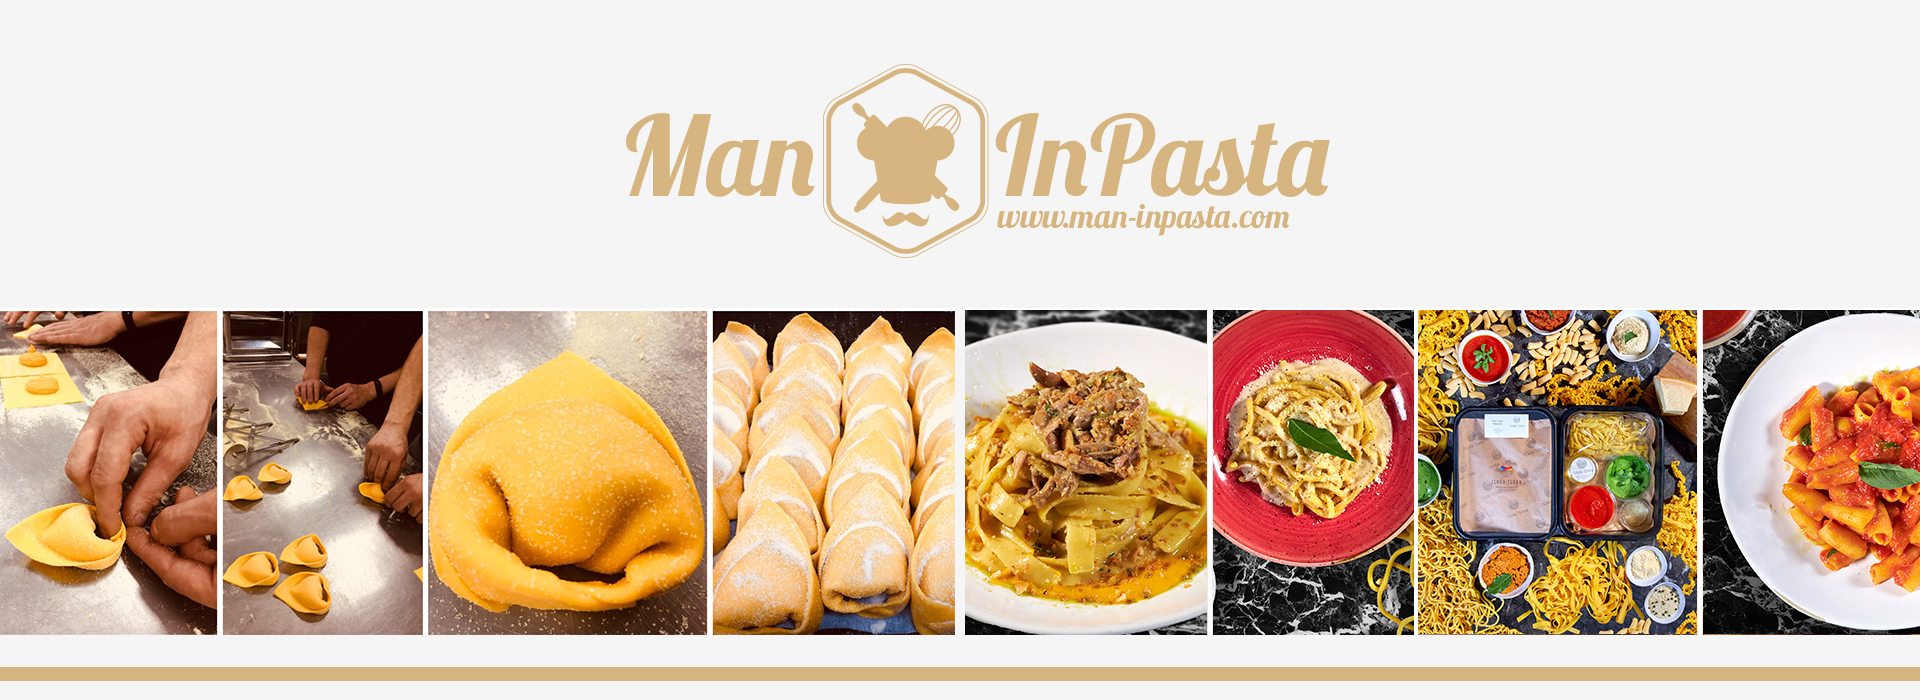 Man-in-pasta-various-pasta